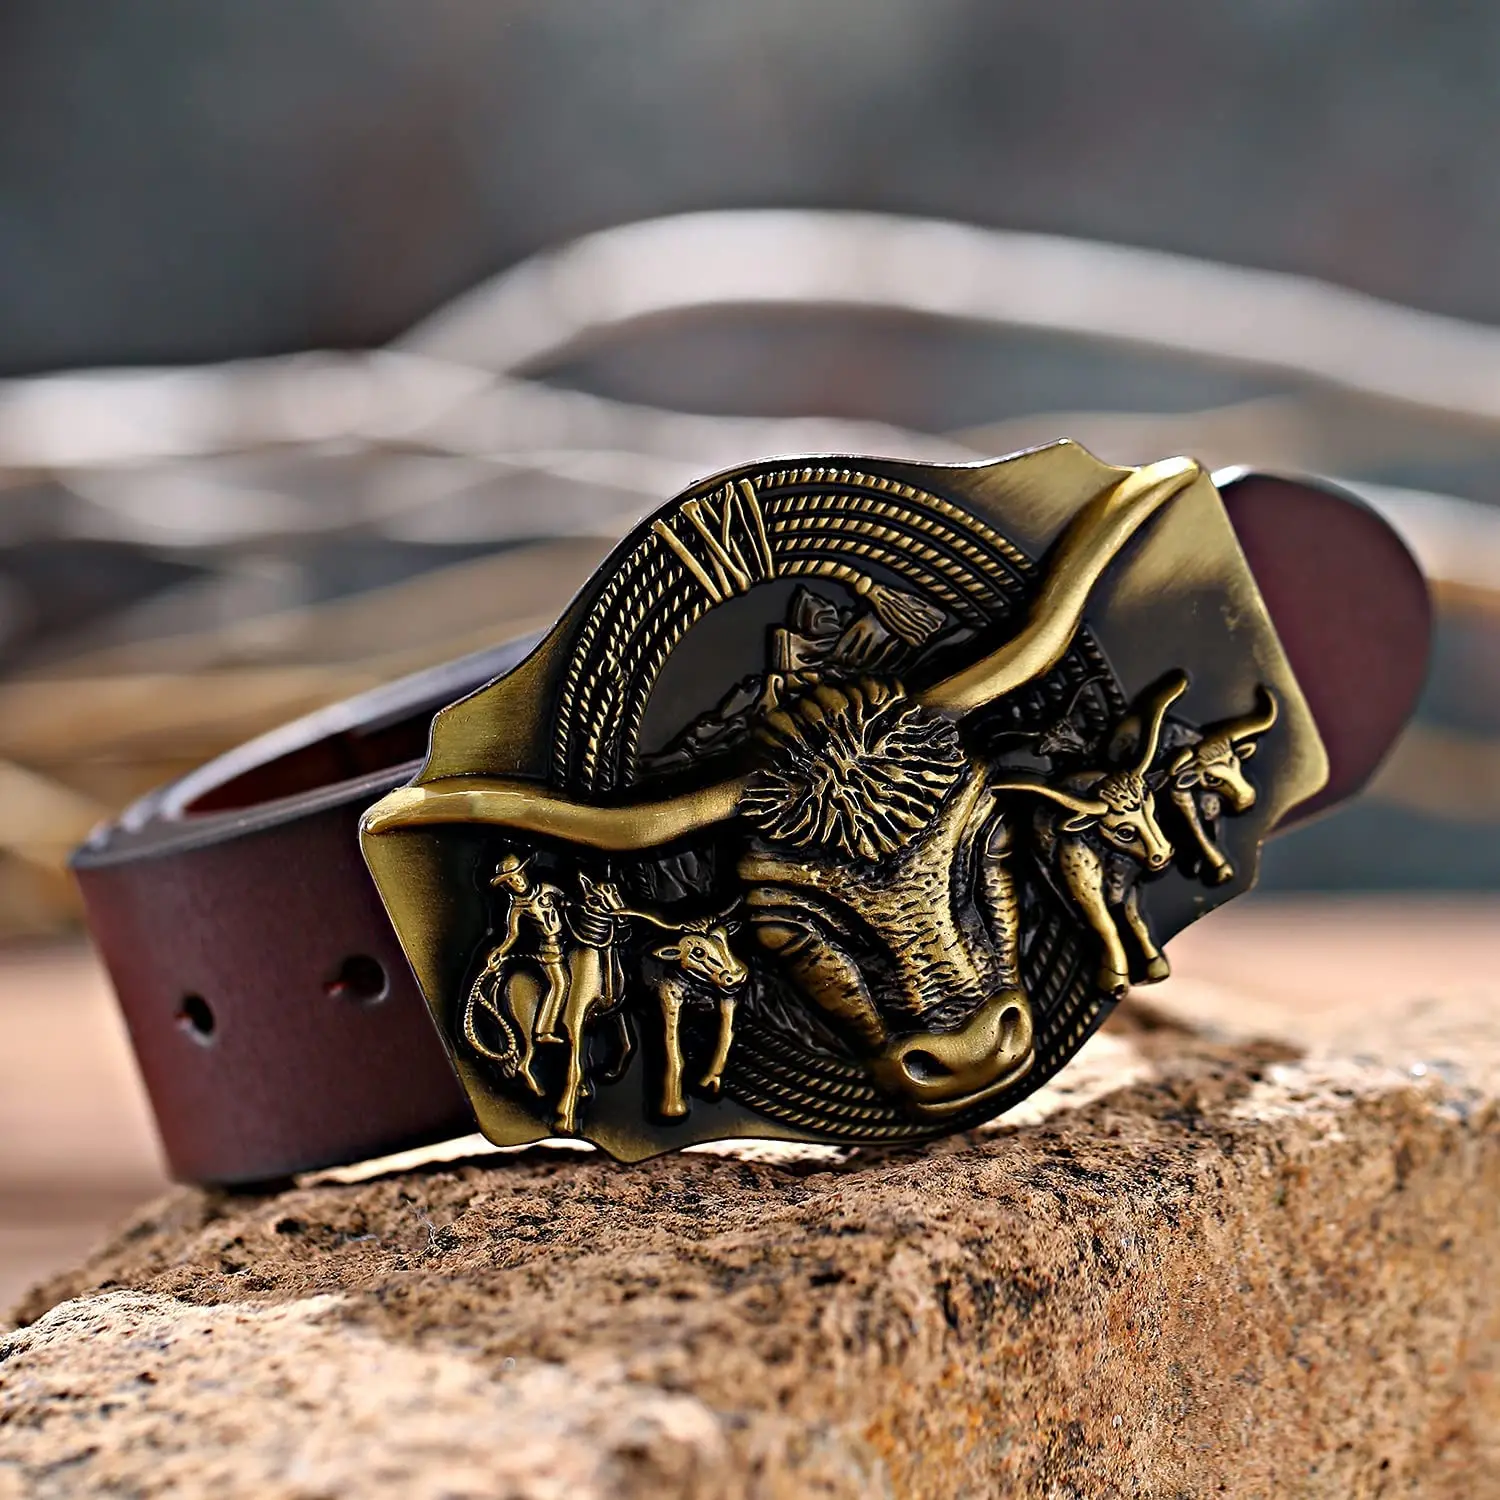 Cowboy belt Texas tauren Antique brass tube novelty belt buckle for men's and women